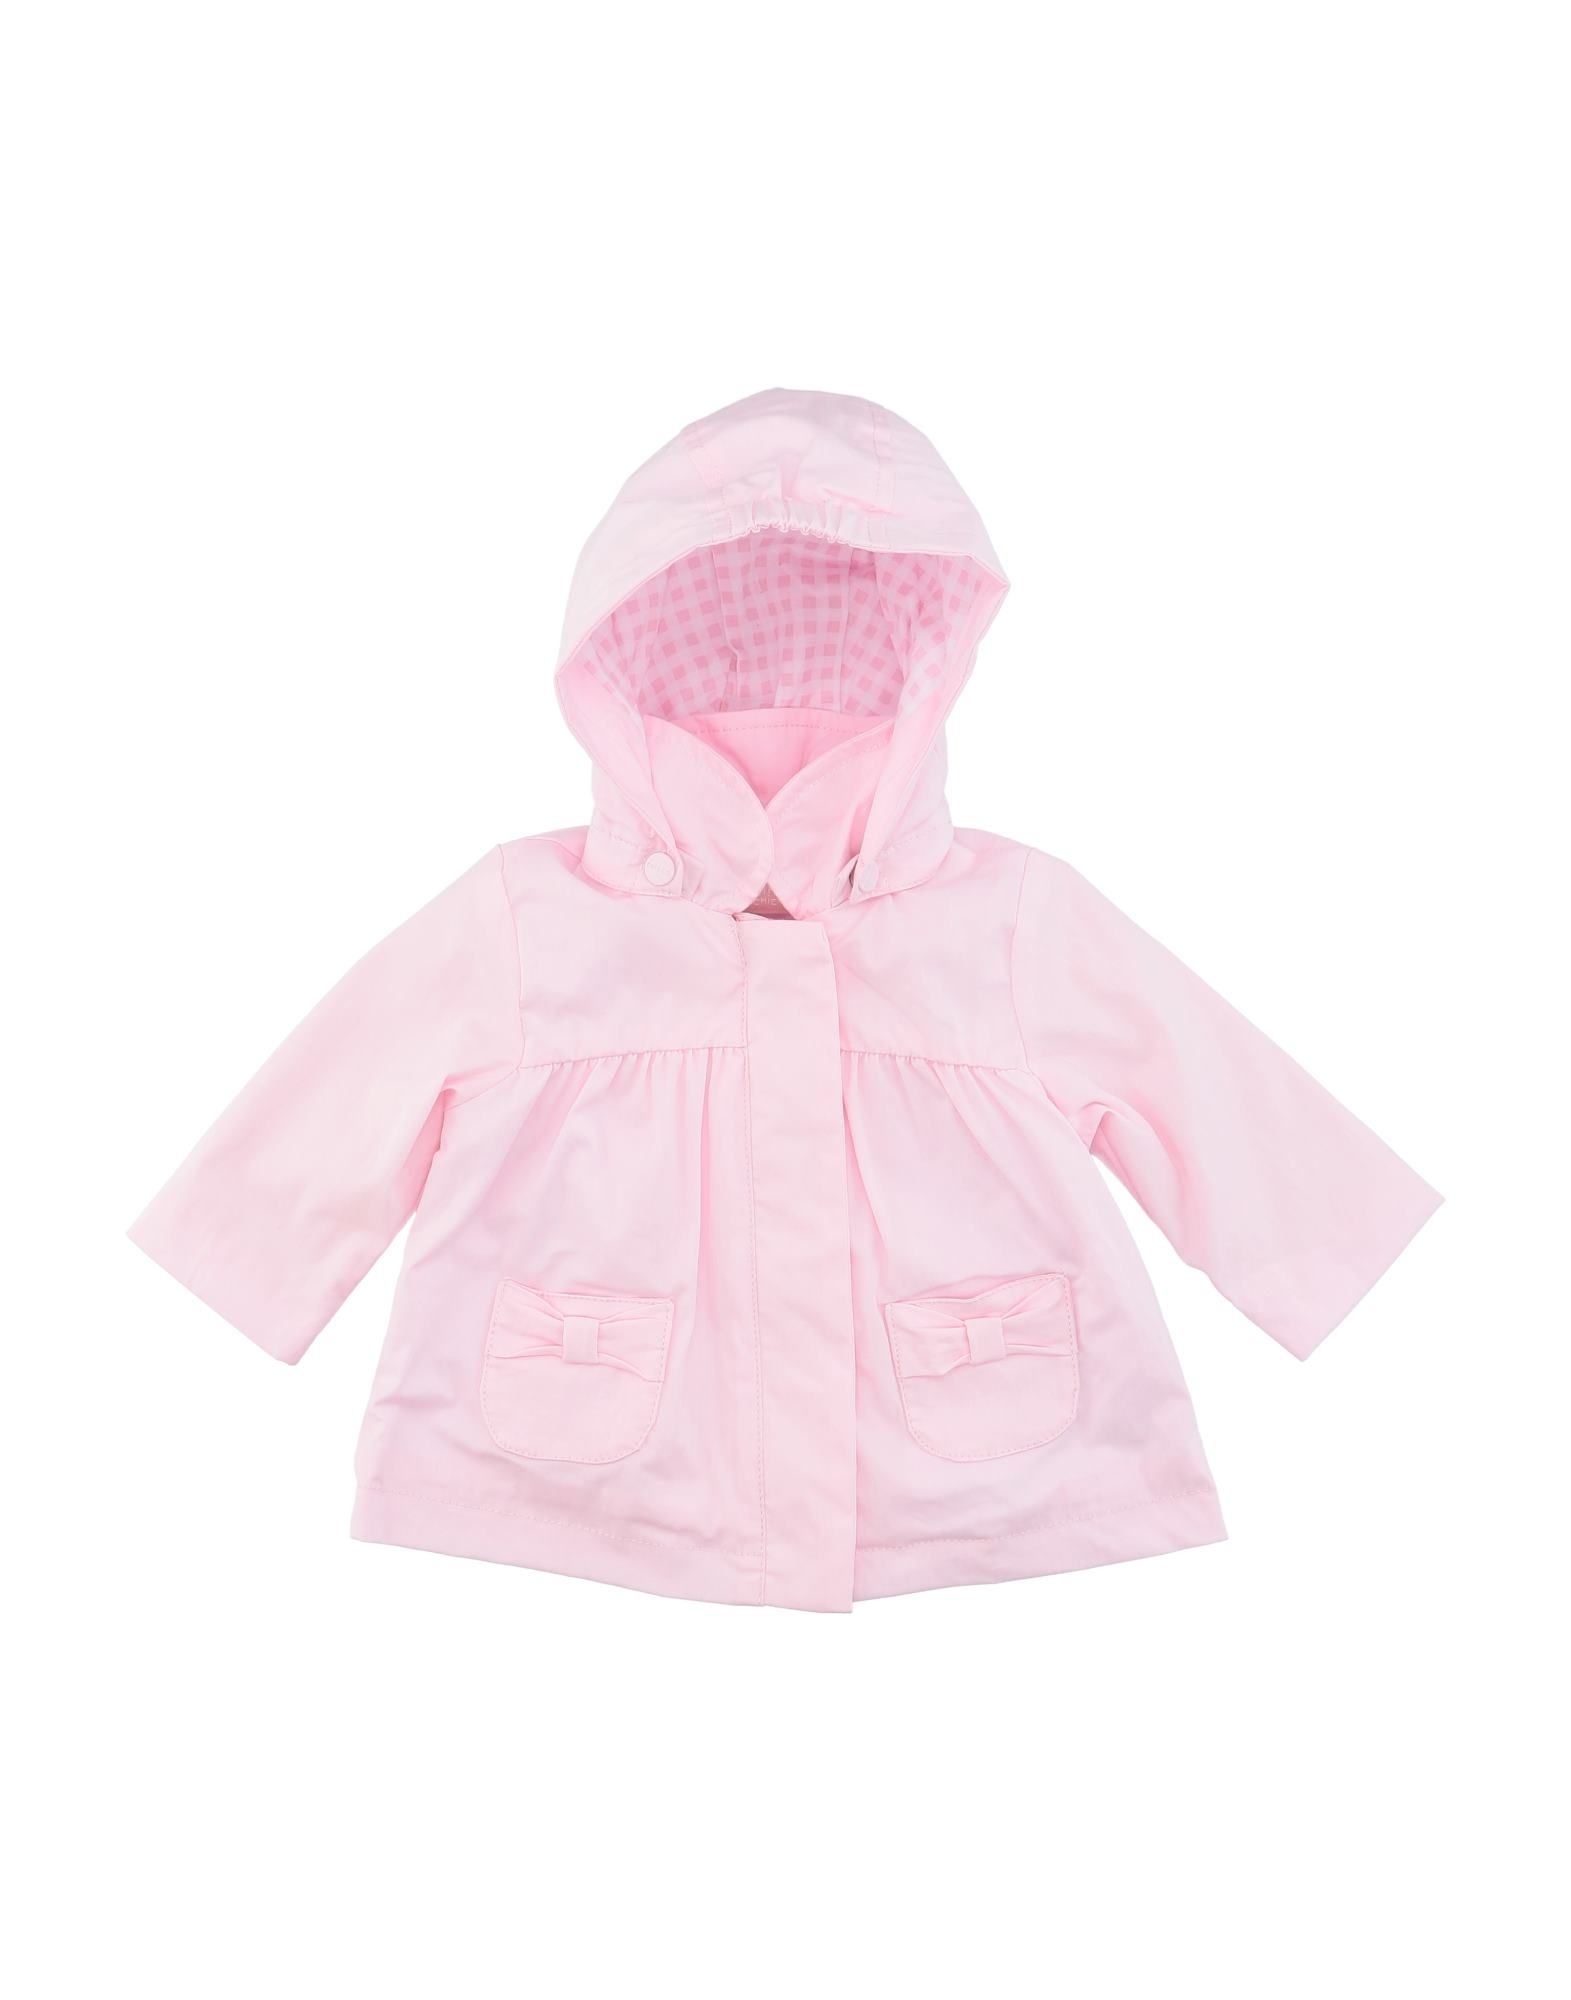 Легкое пальто  - Белый,Розовый цвет